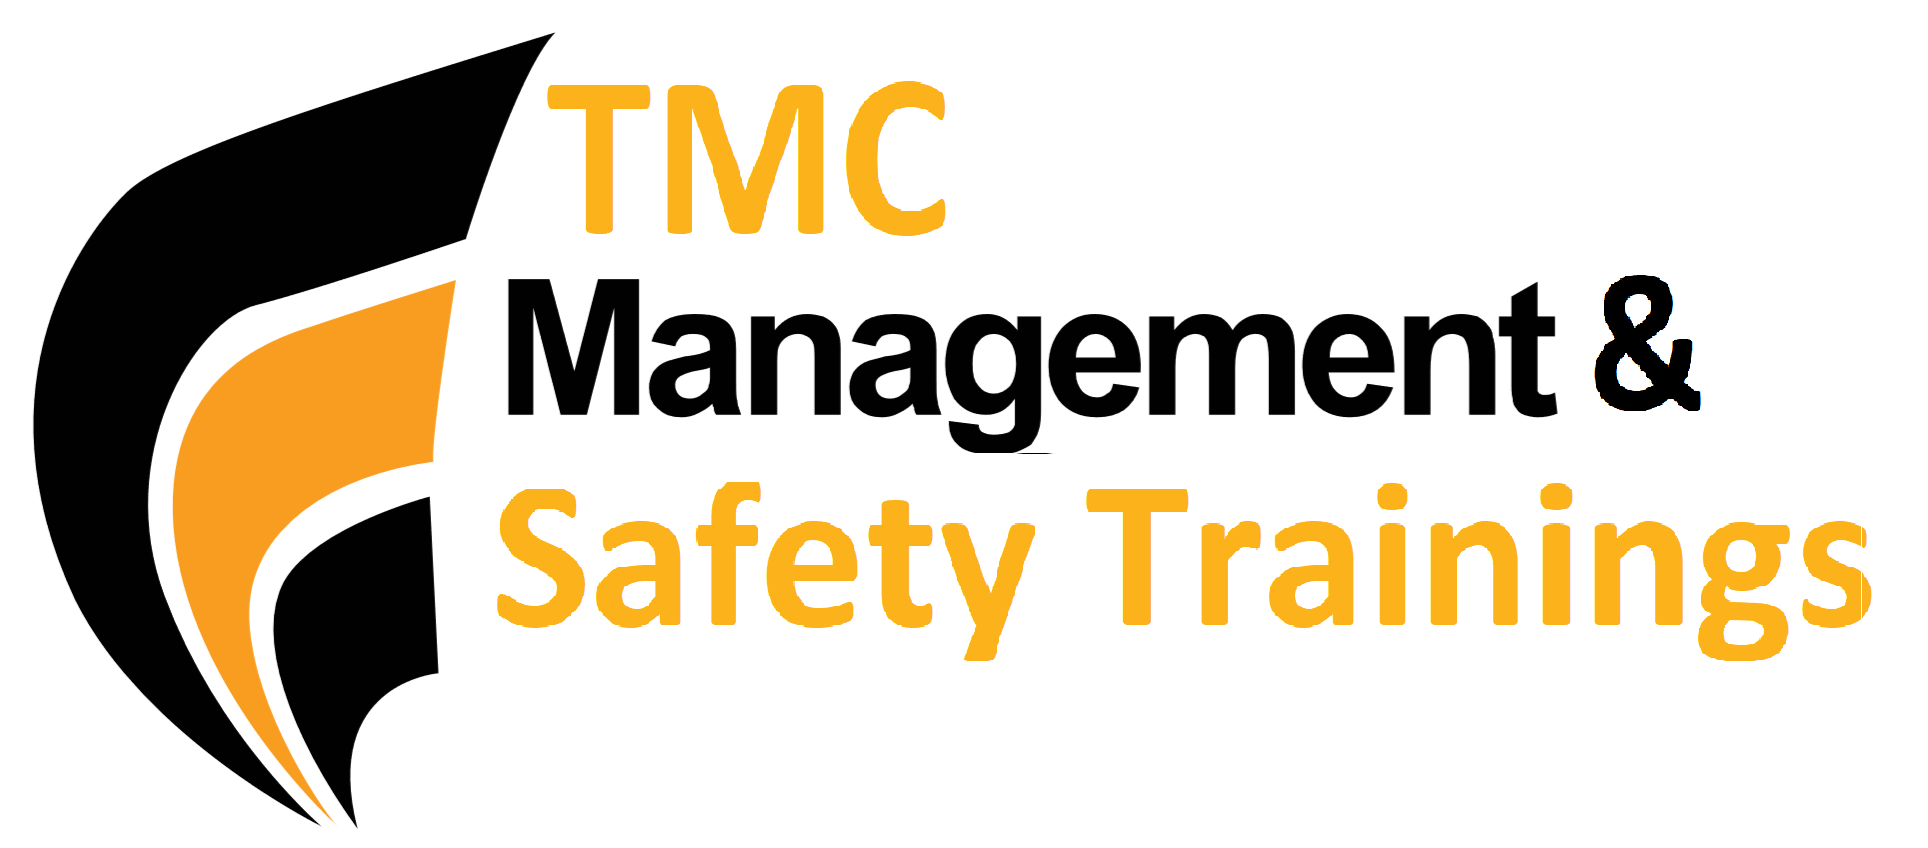 TMC Management & Safety Training Logo